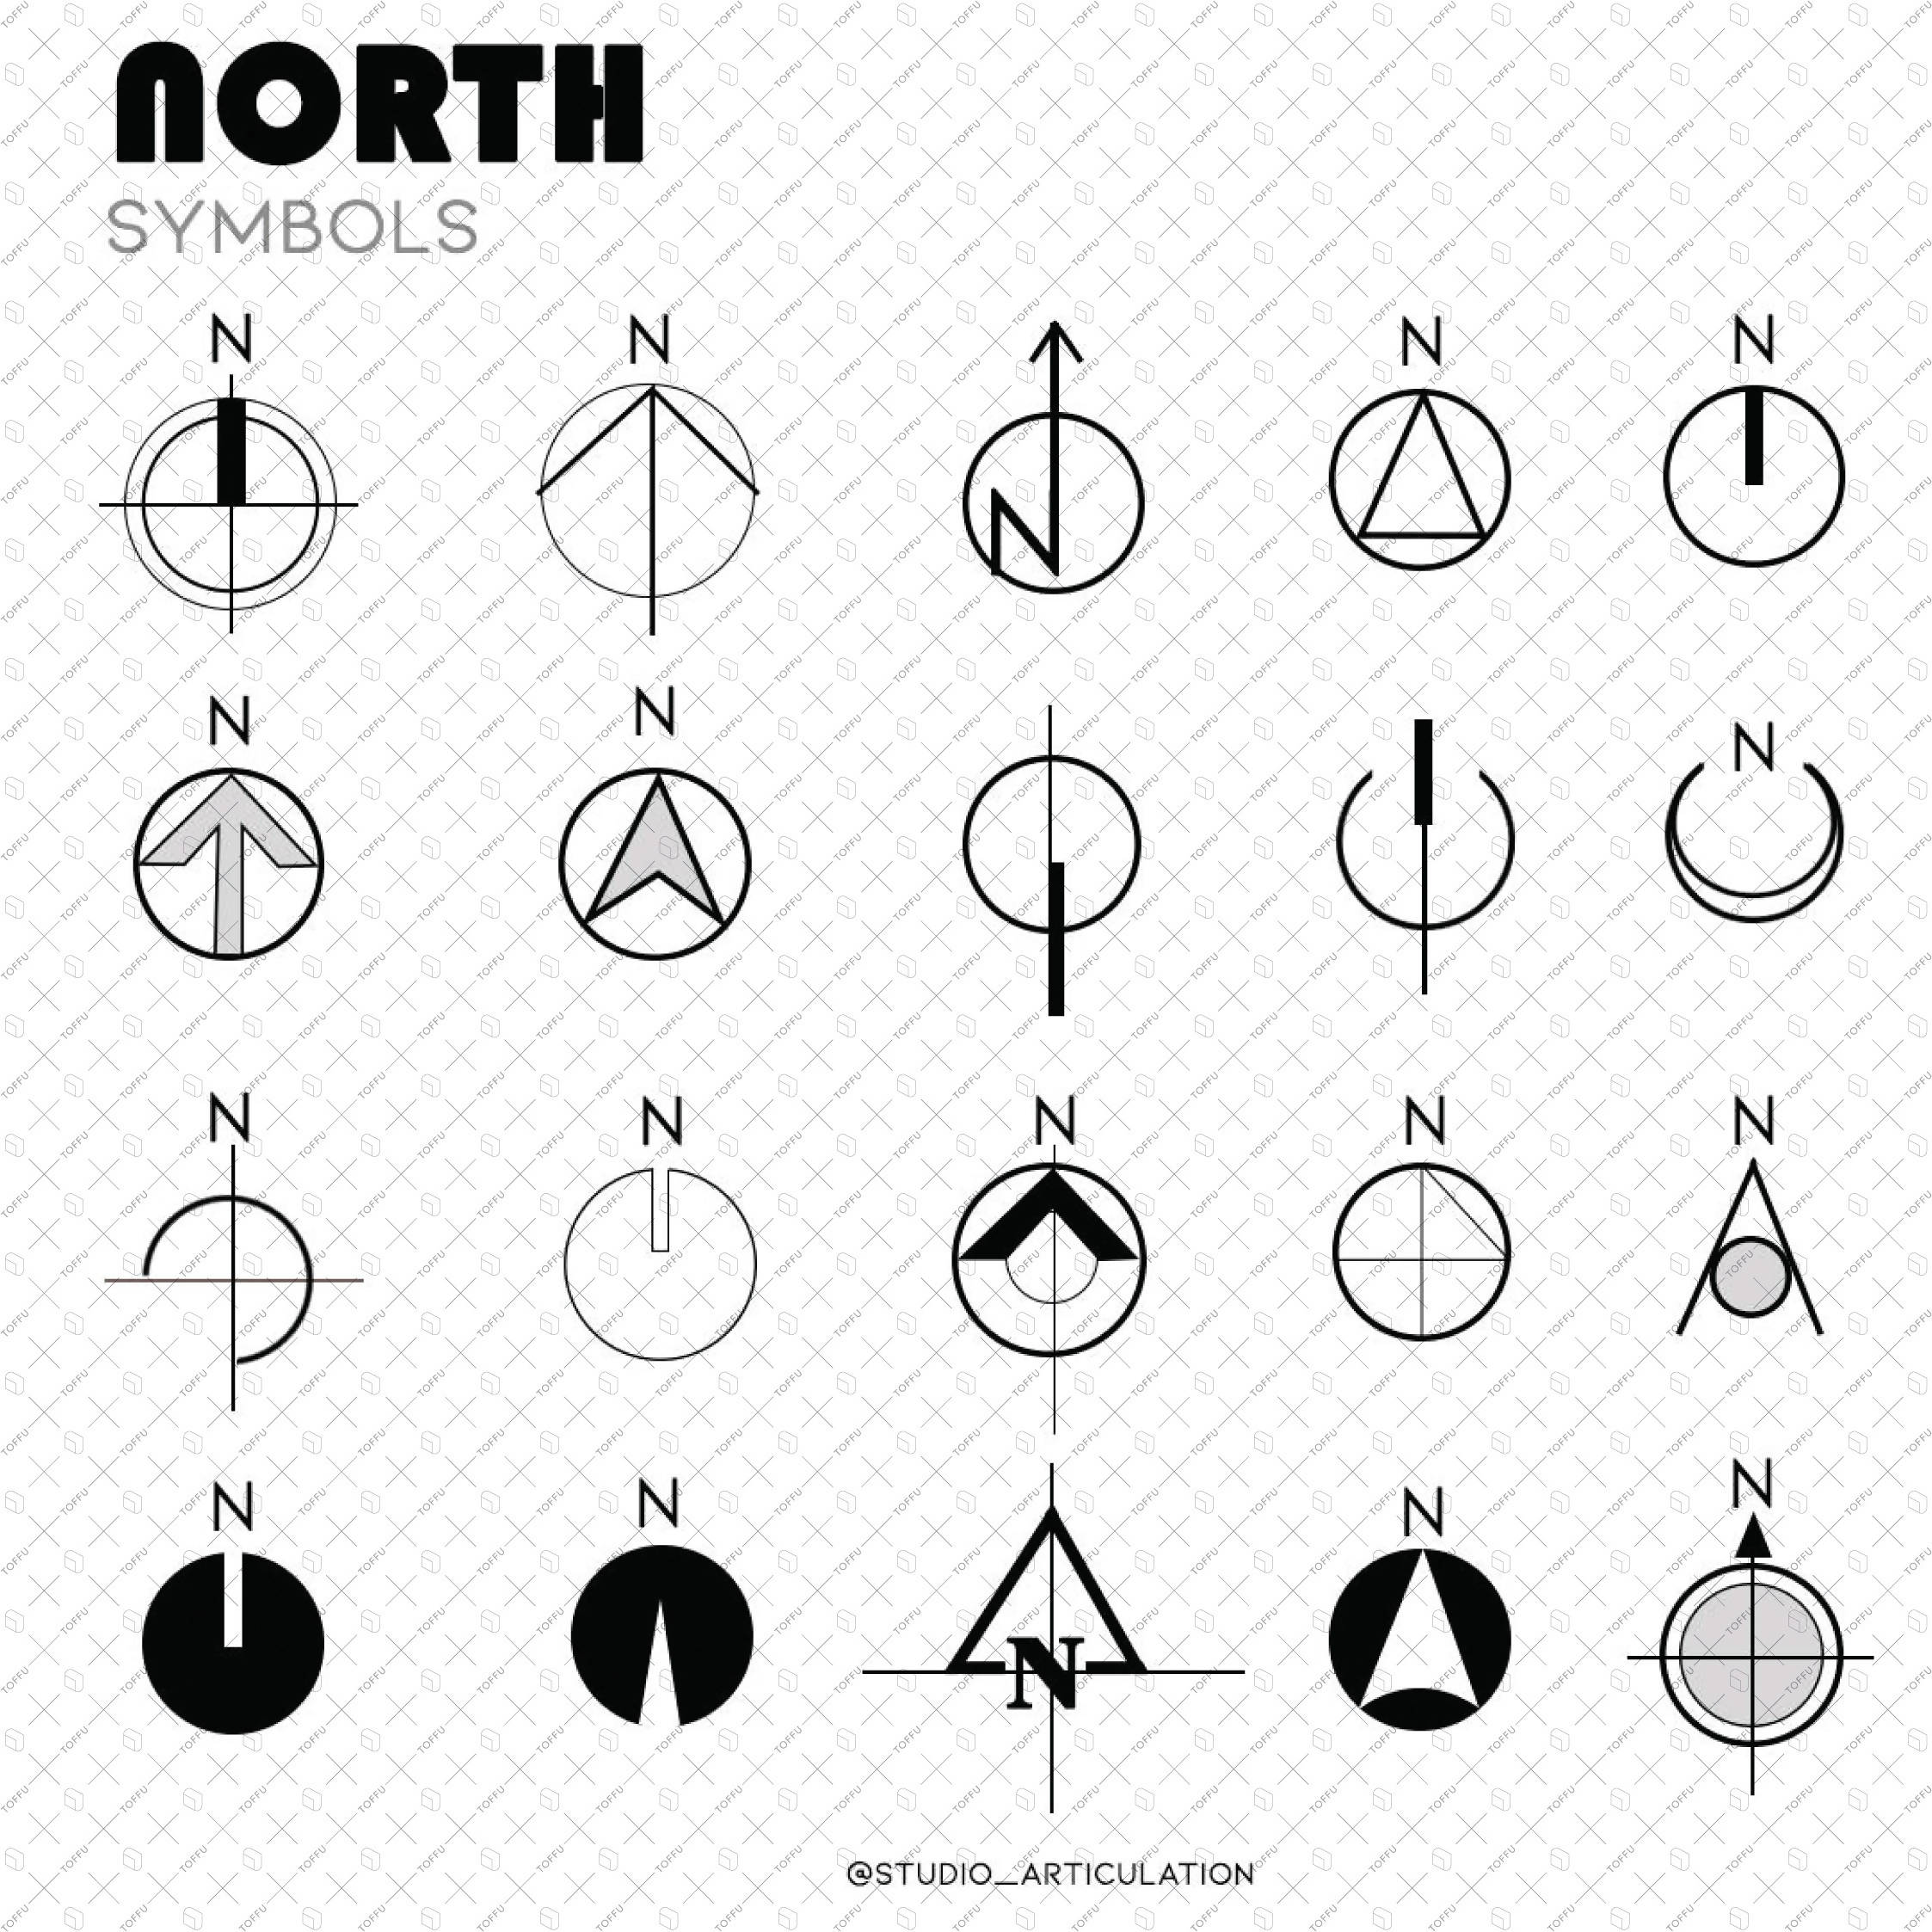 architectural north arrow vector